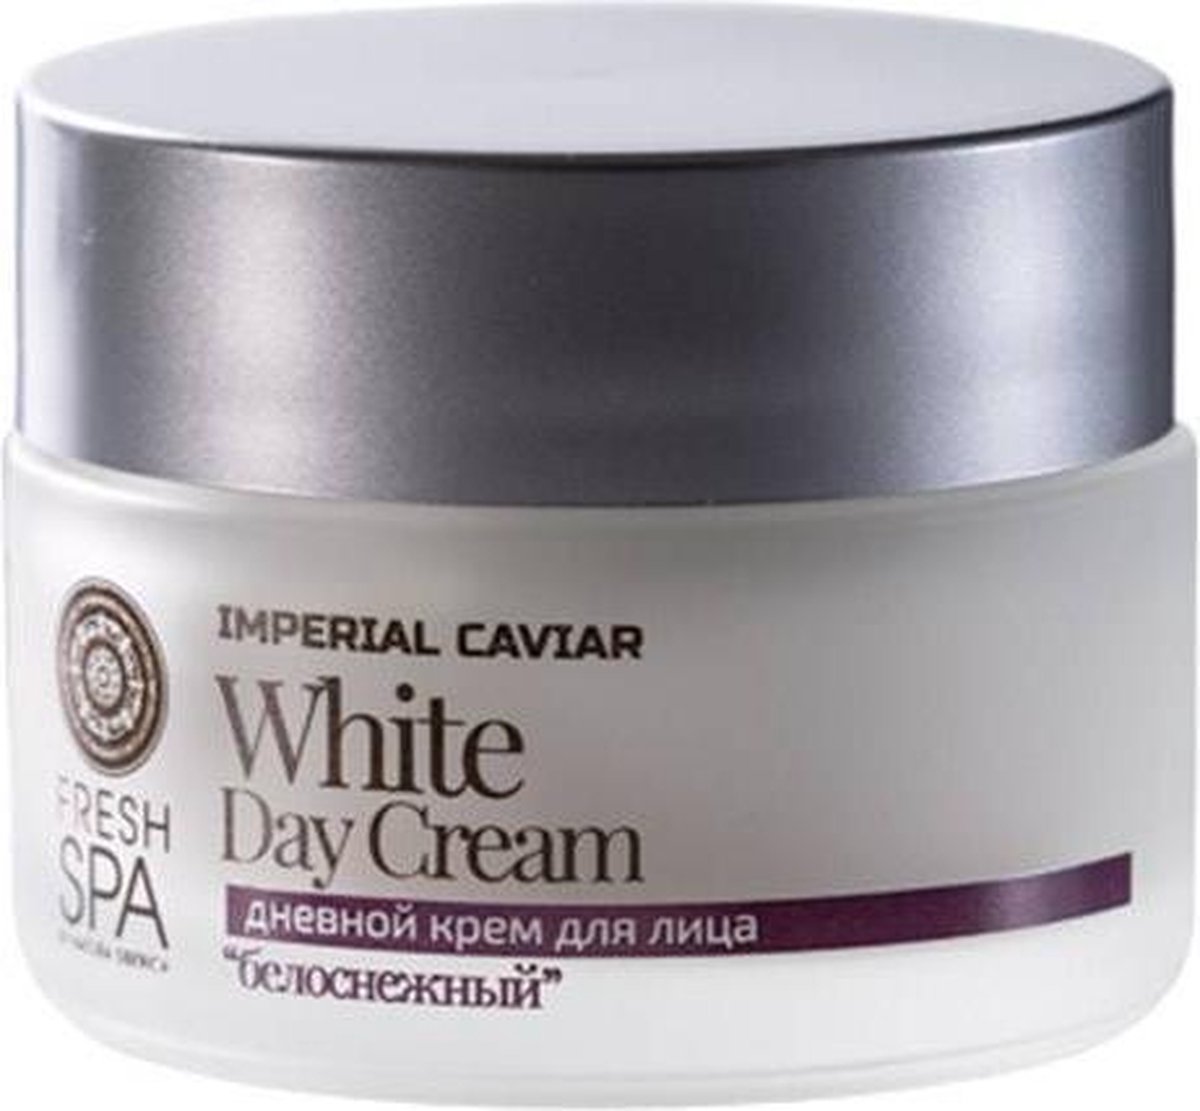 Siberica Professional - Fresh Spa White Day Cream biały krem odmładzający do twarzy na dzień 50ml